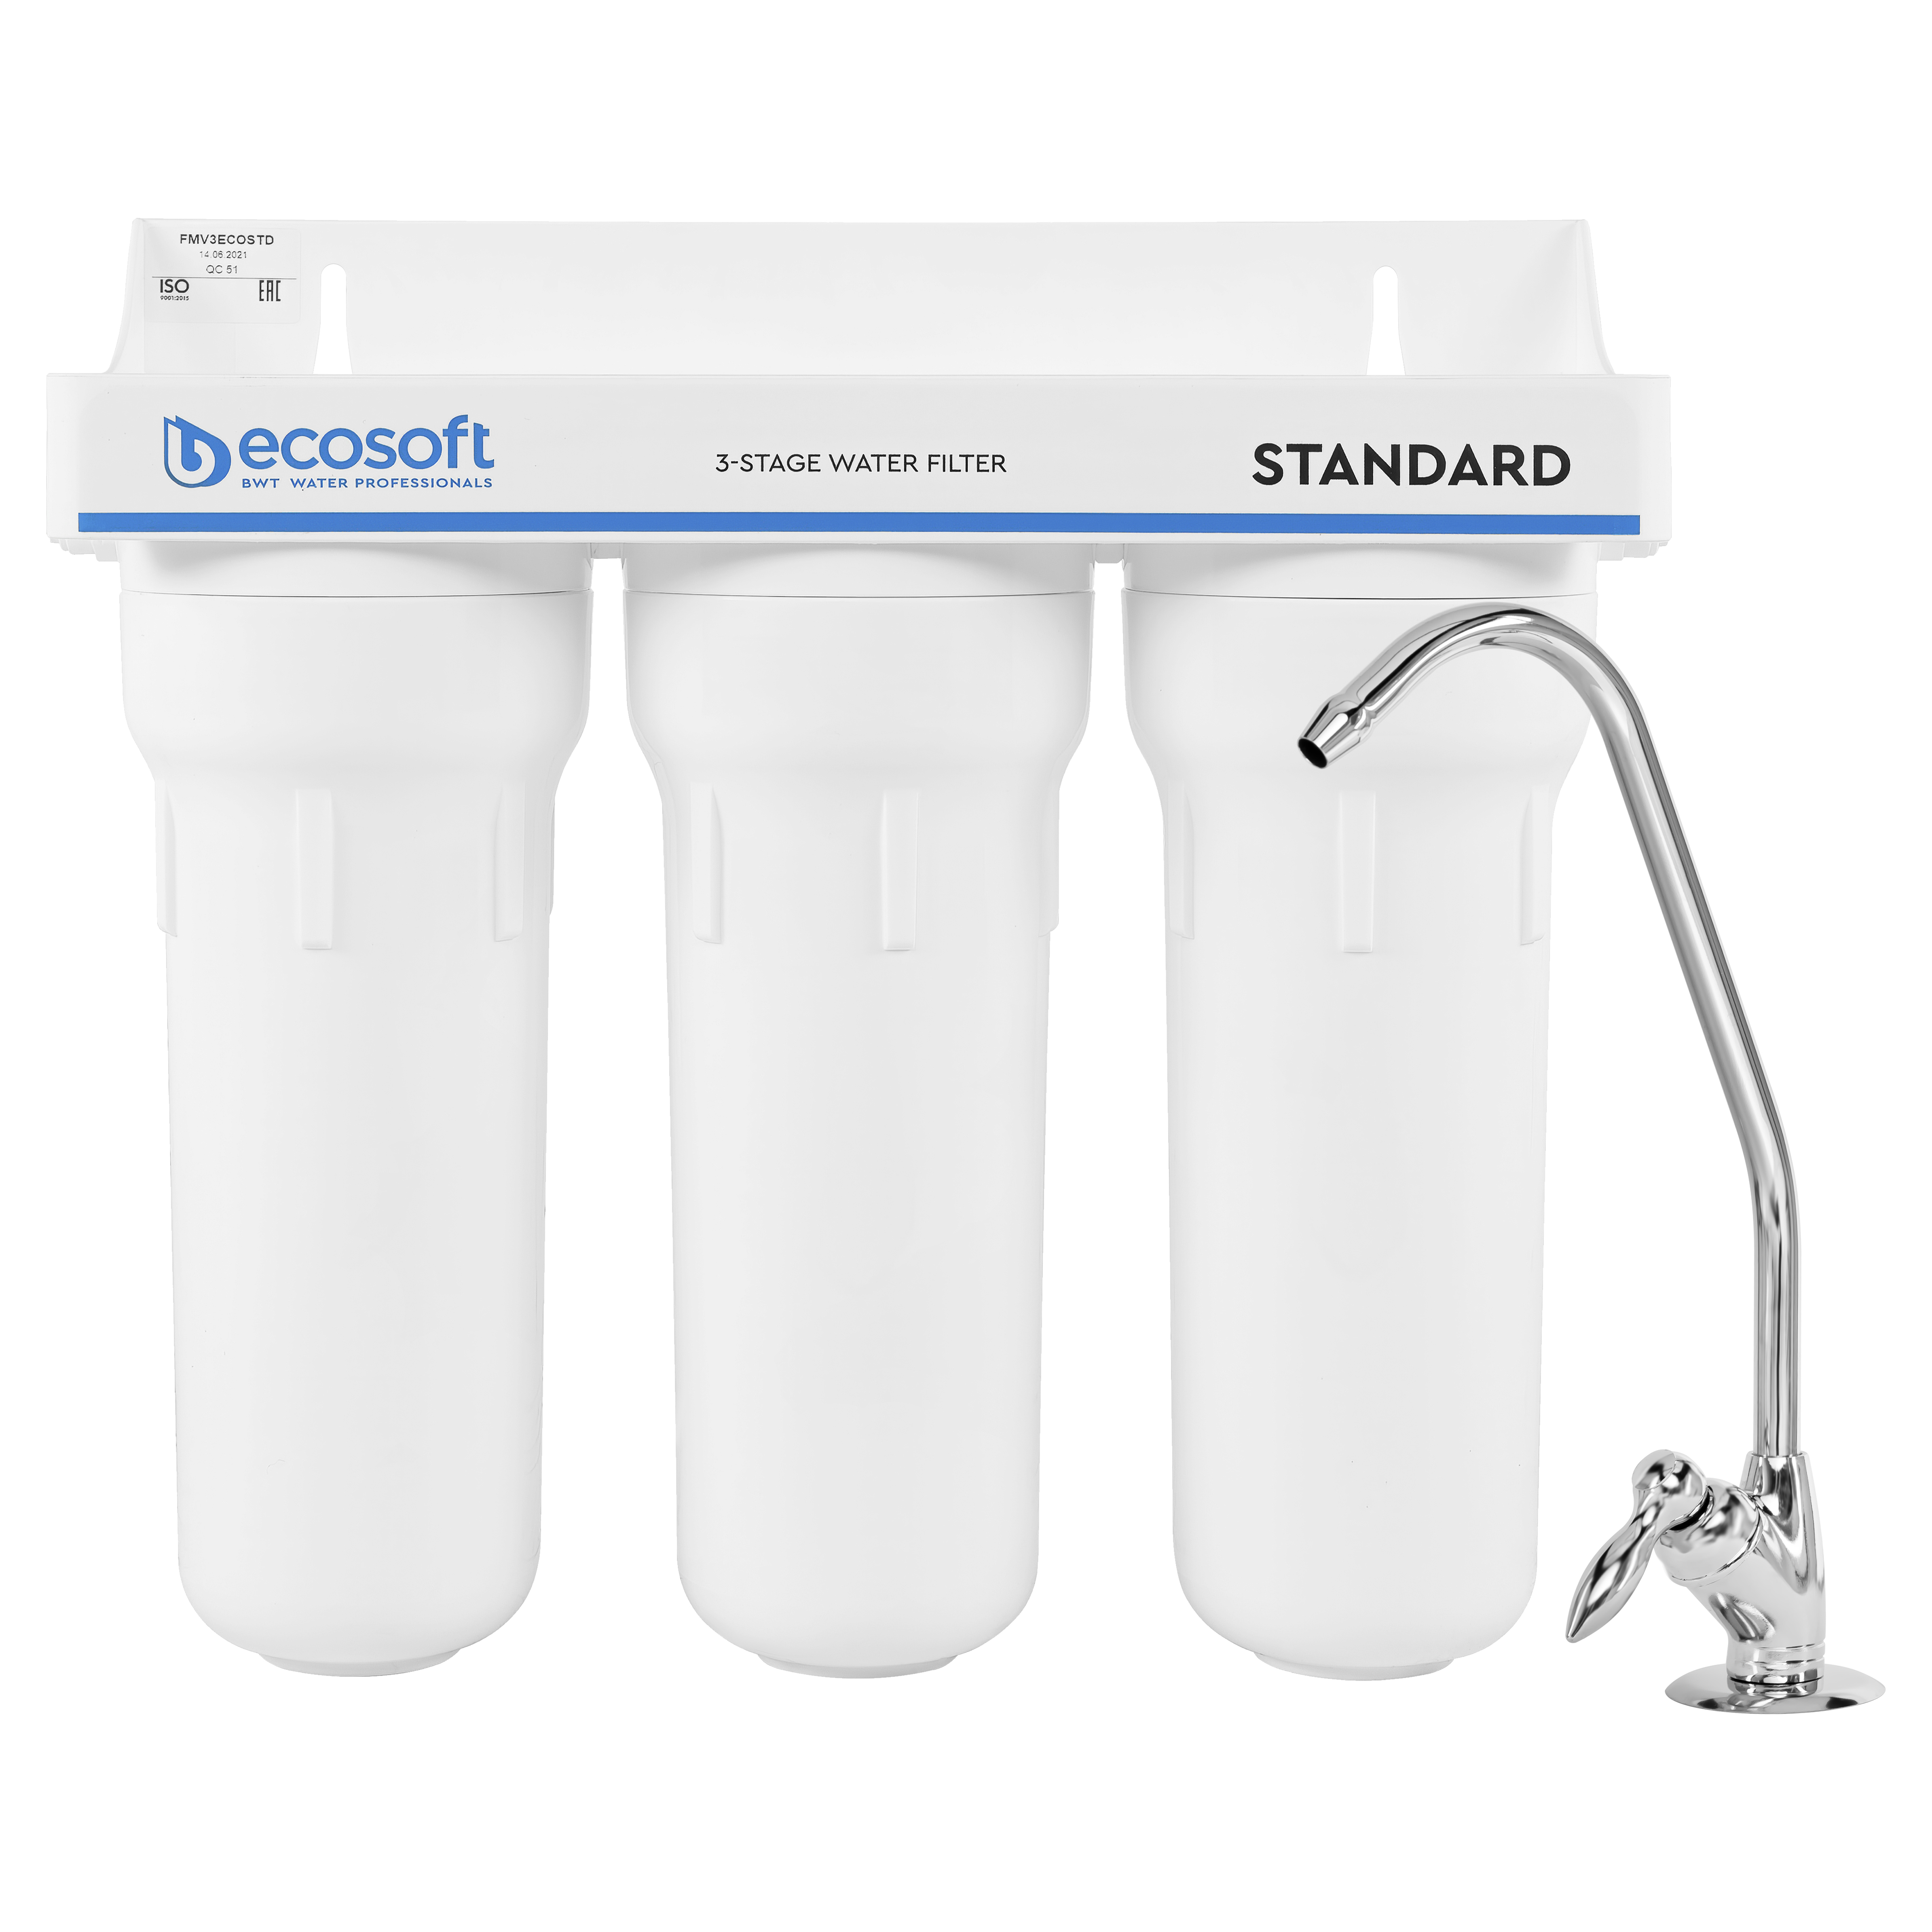 Характеристики фильтр для очистки воды в квартире Ecosoft Standard FMV3ECOSTD